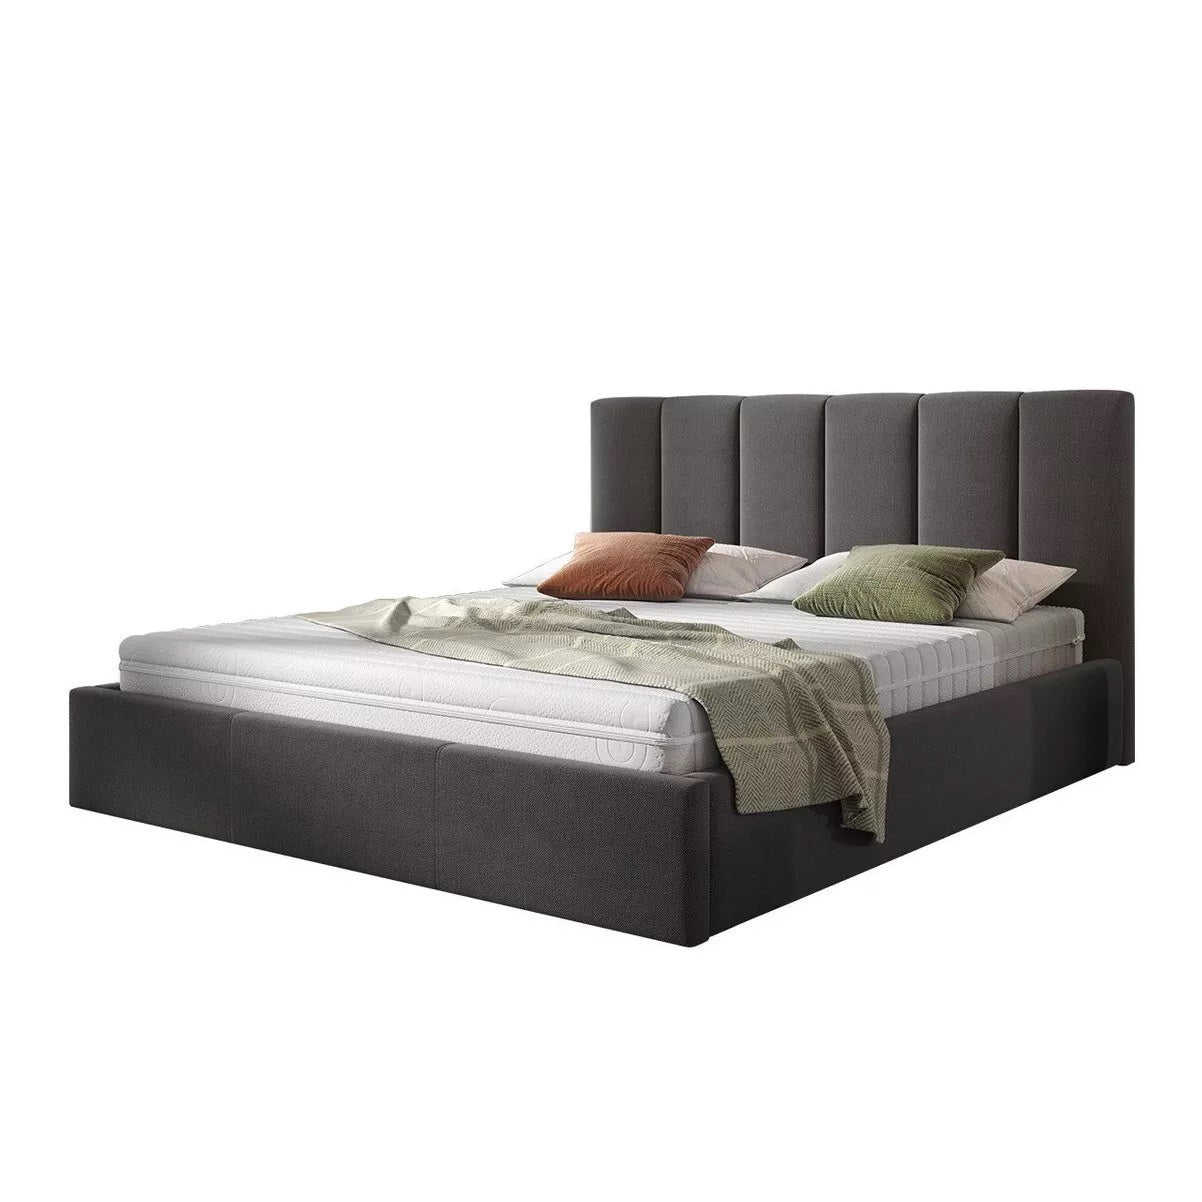 Bed 160 x 195 cm - TEM179